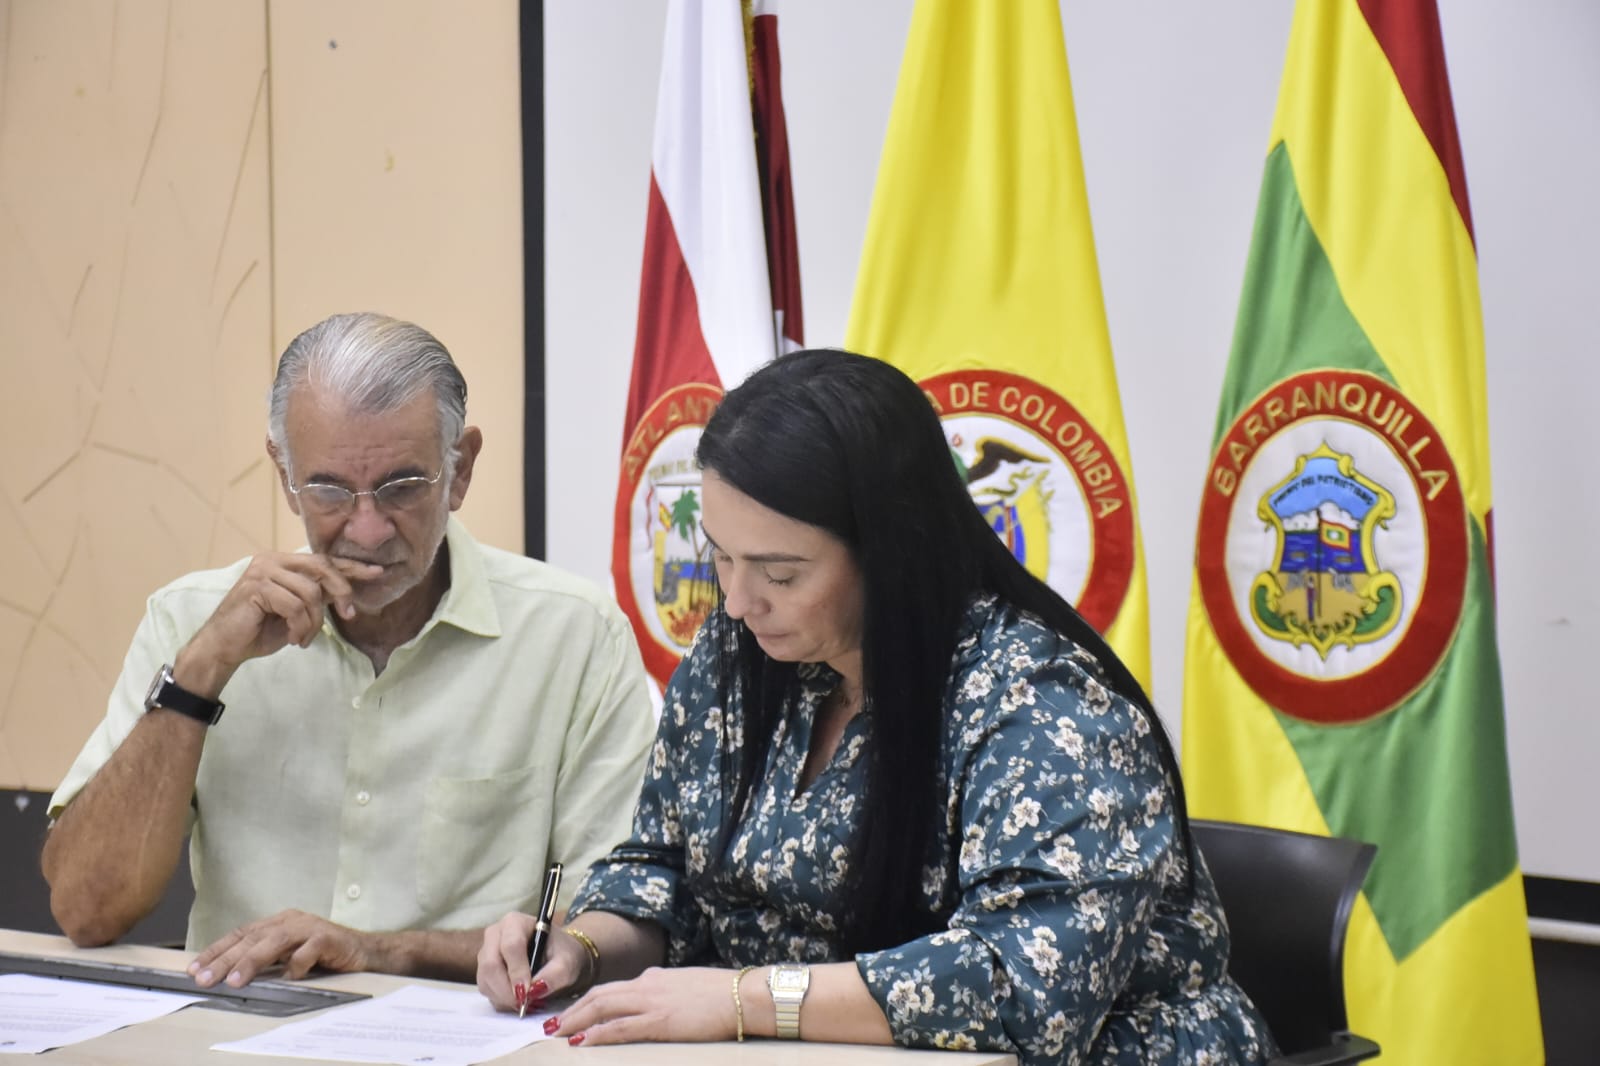 El Gobernador Eduardo Verano y Rosmery Wehedeking, subsecretaria de Asesorías y Asistencia en Seguridad Social.